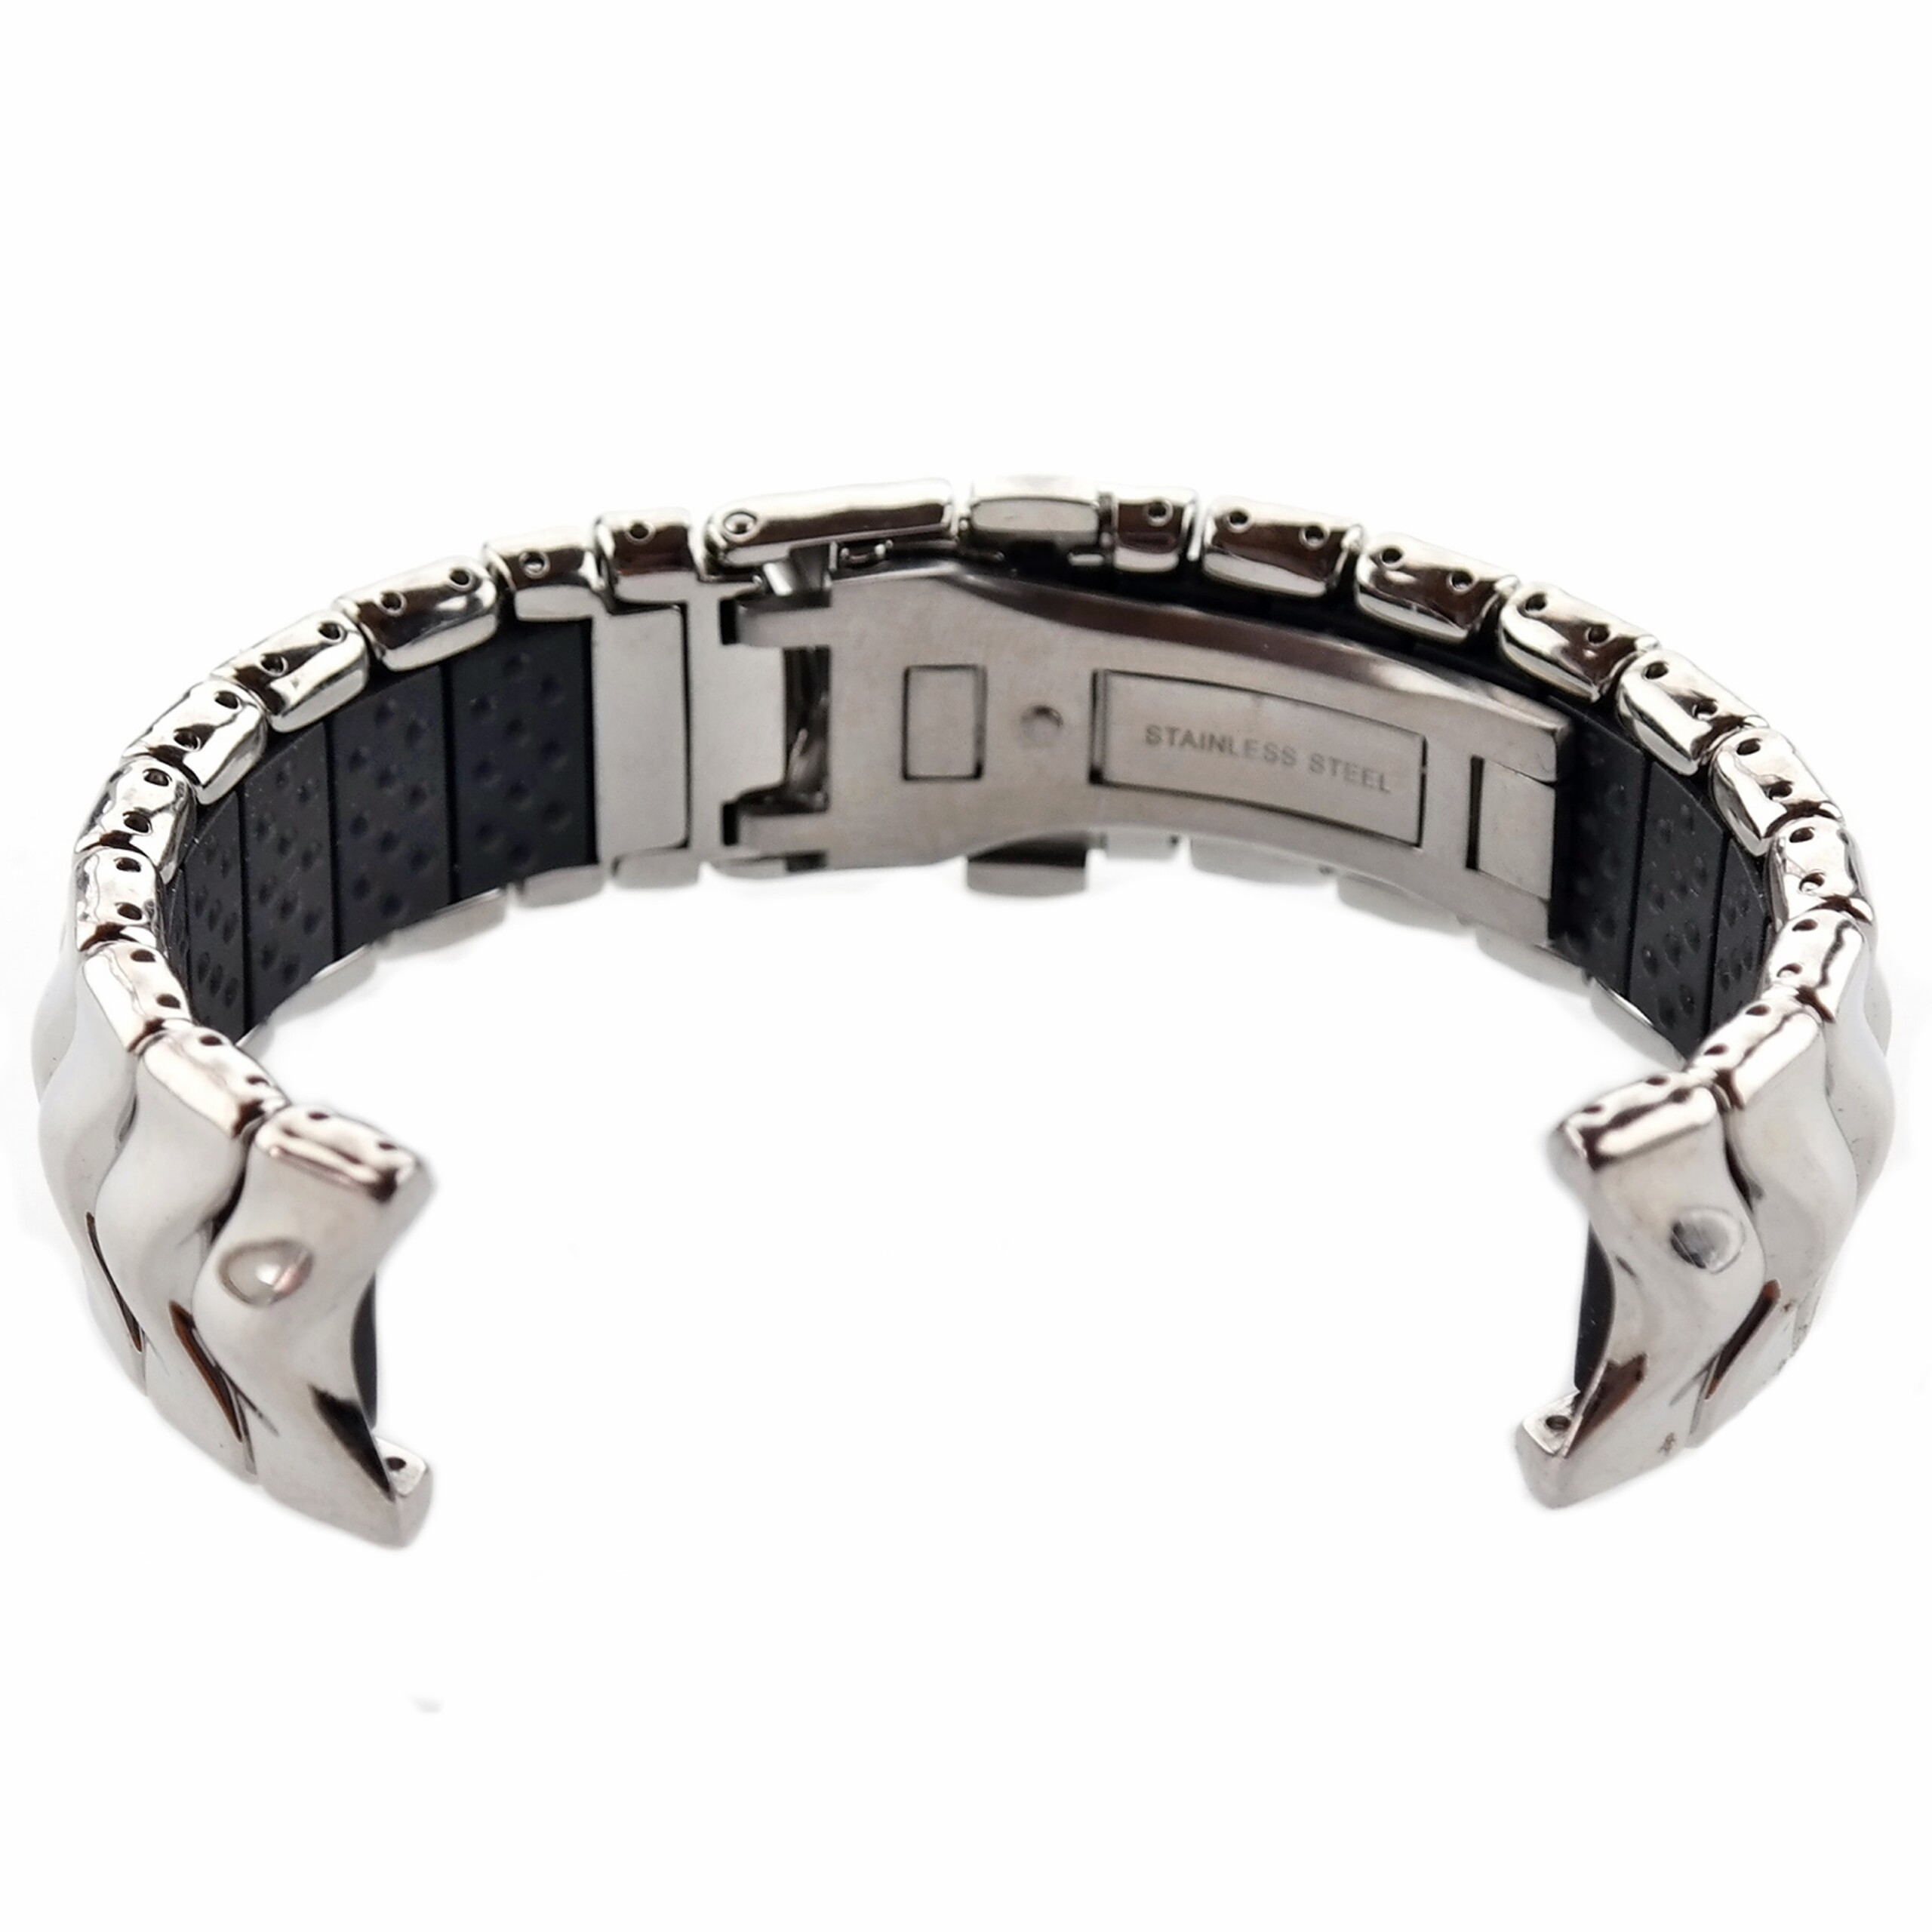 OAKLEY - Stainless Steel Watch Bracelet - 19 mm